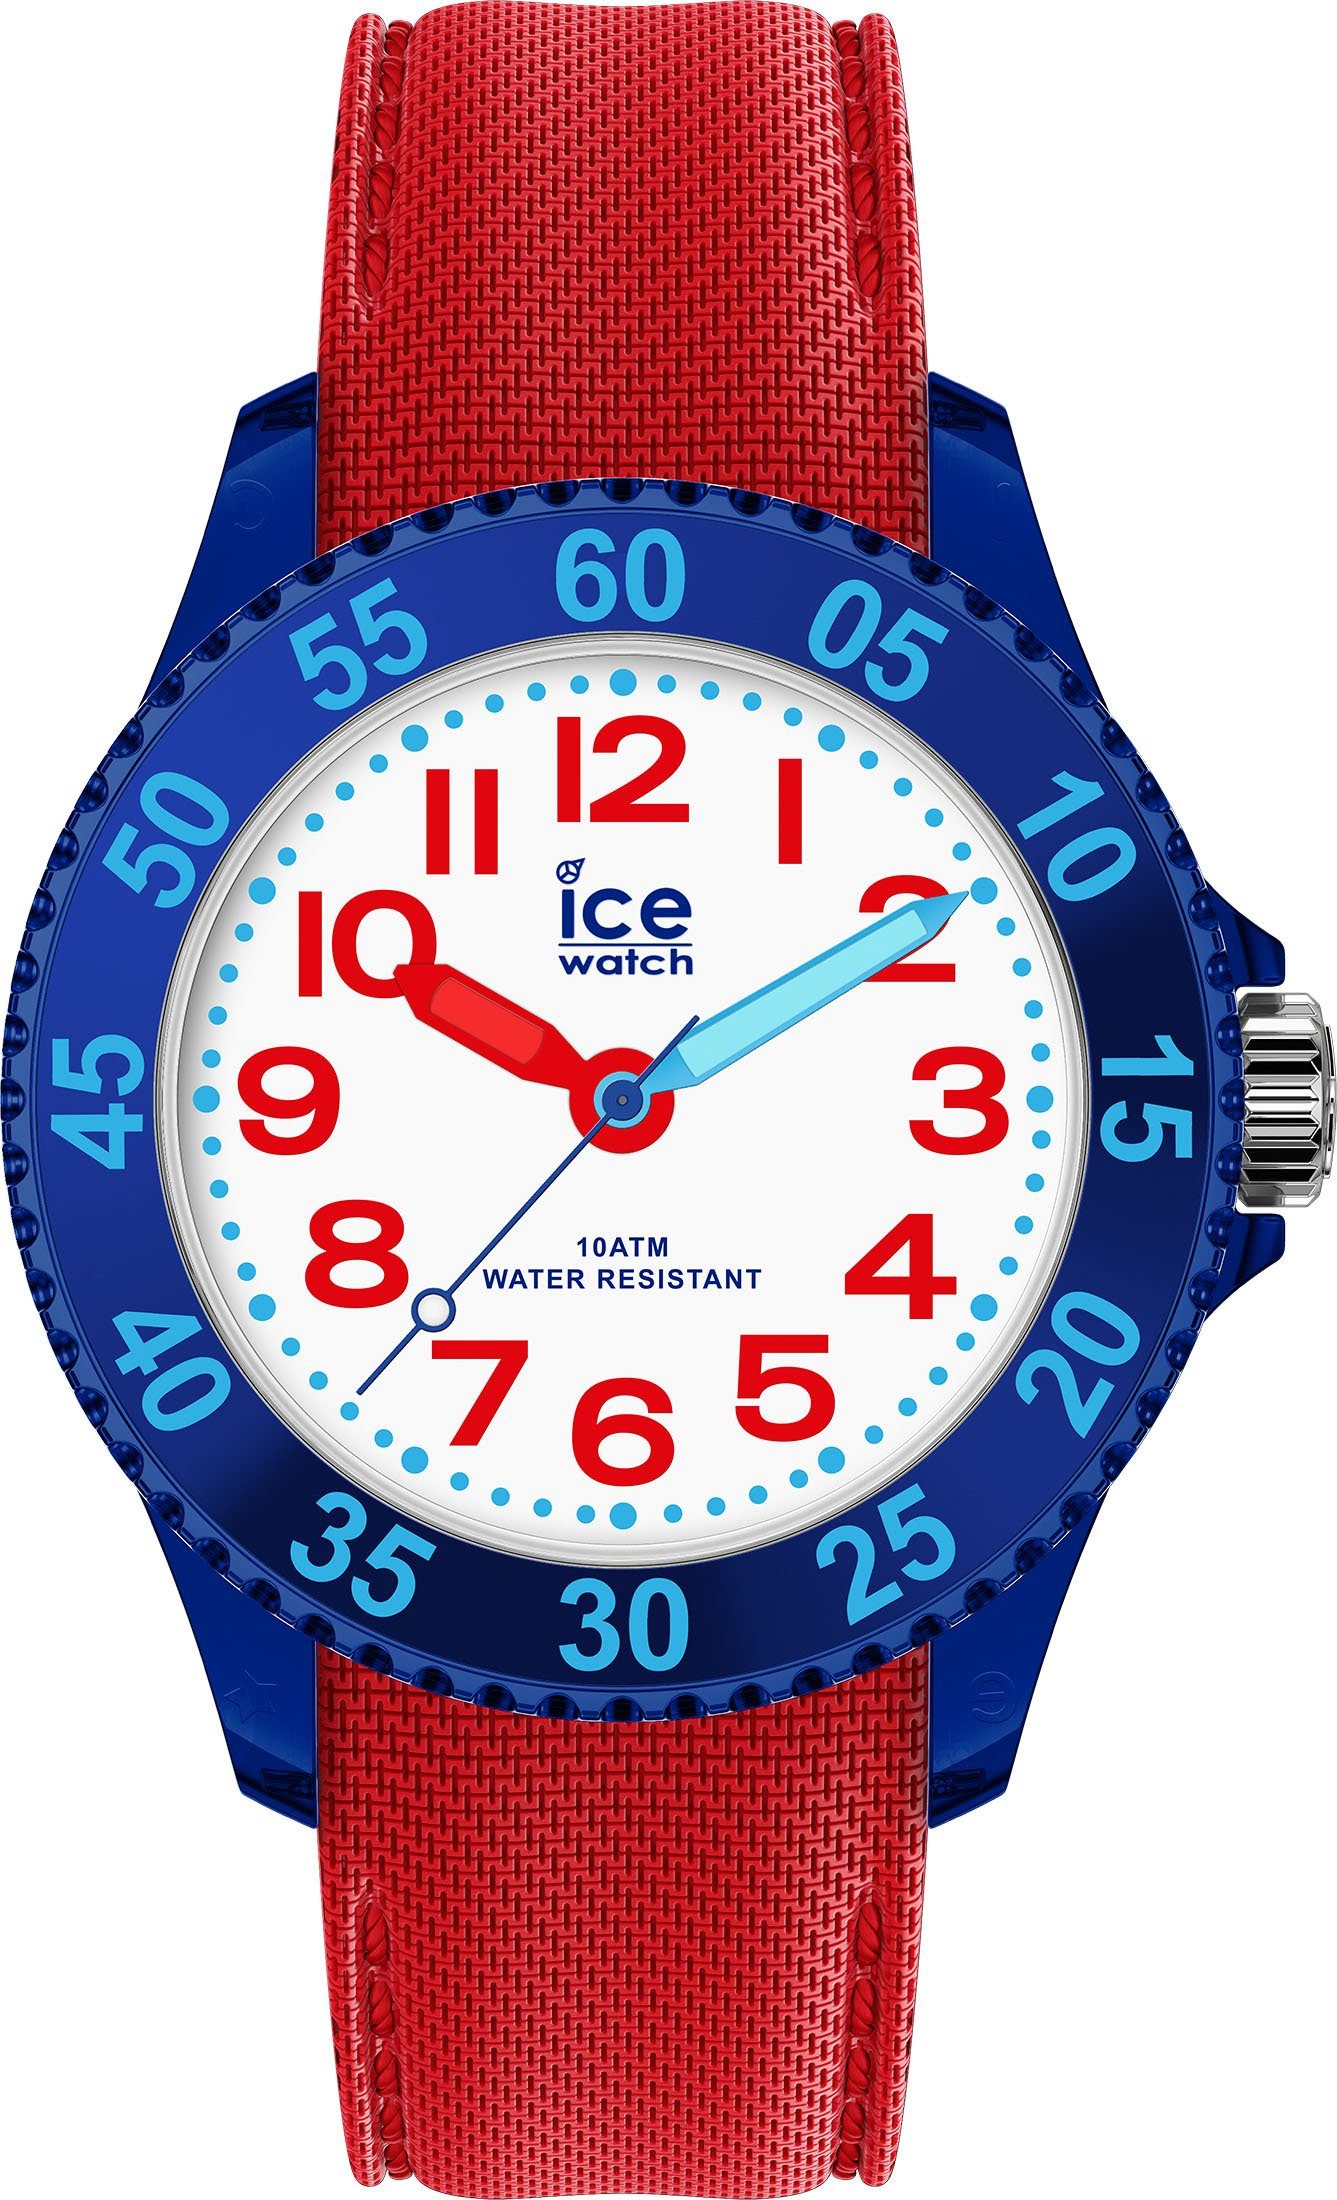 ice-watch Quarzuhr ICE cartoon XS - Spider, 018933, ideal auch als Geschenk